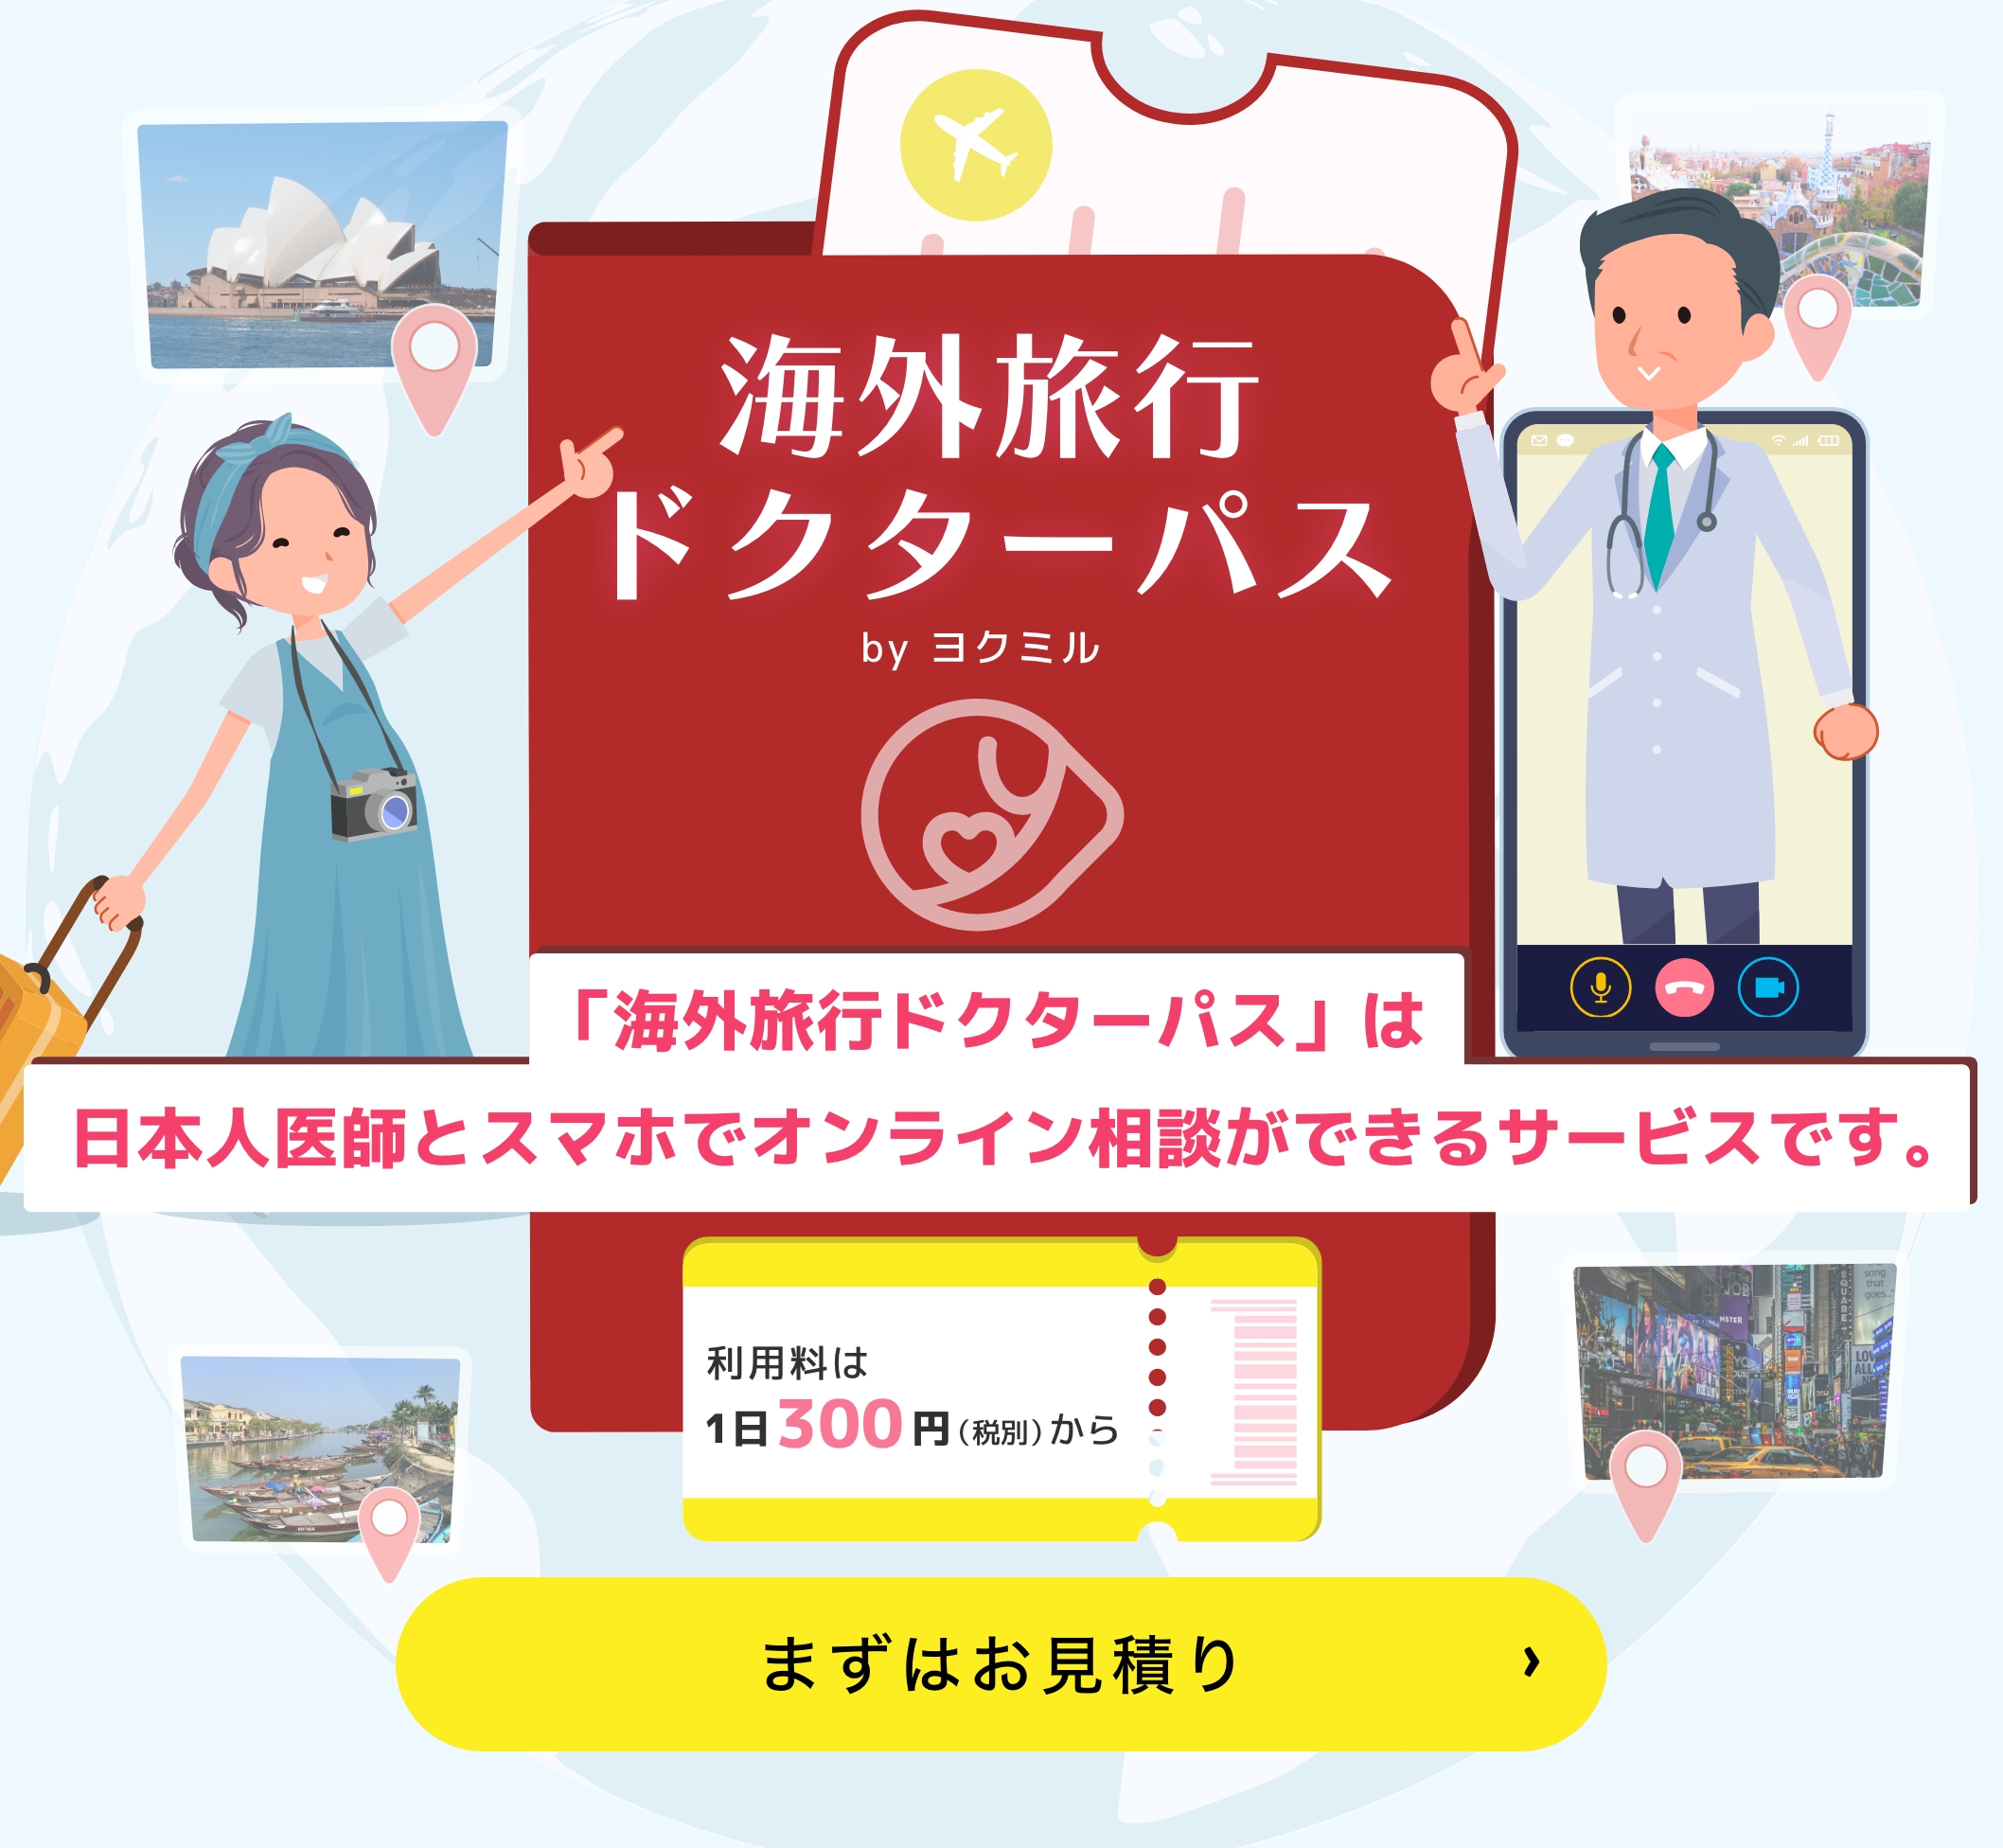 「海外旅行ドクターパス」は日本人医師とスマホでオンライン相談ができるサービスです。